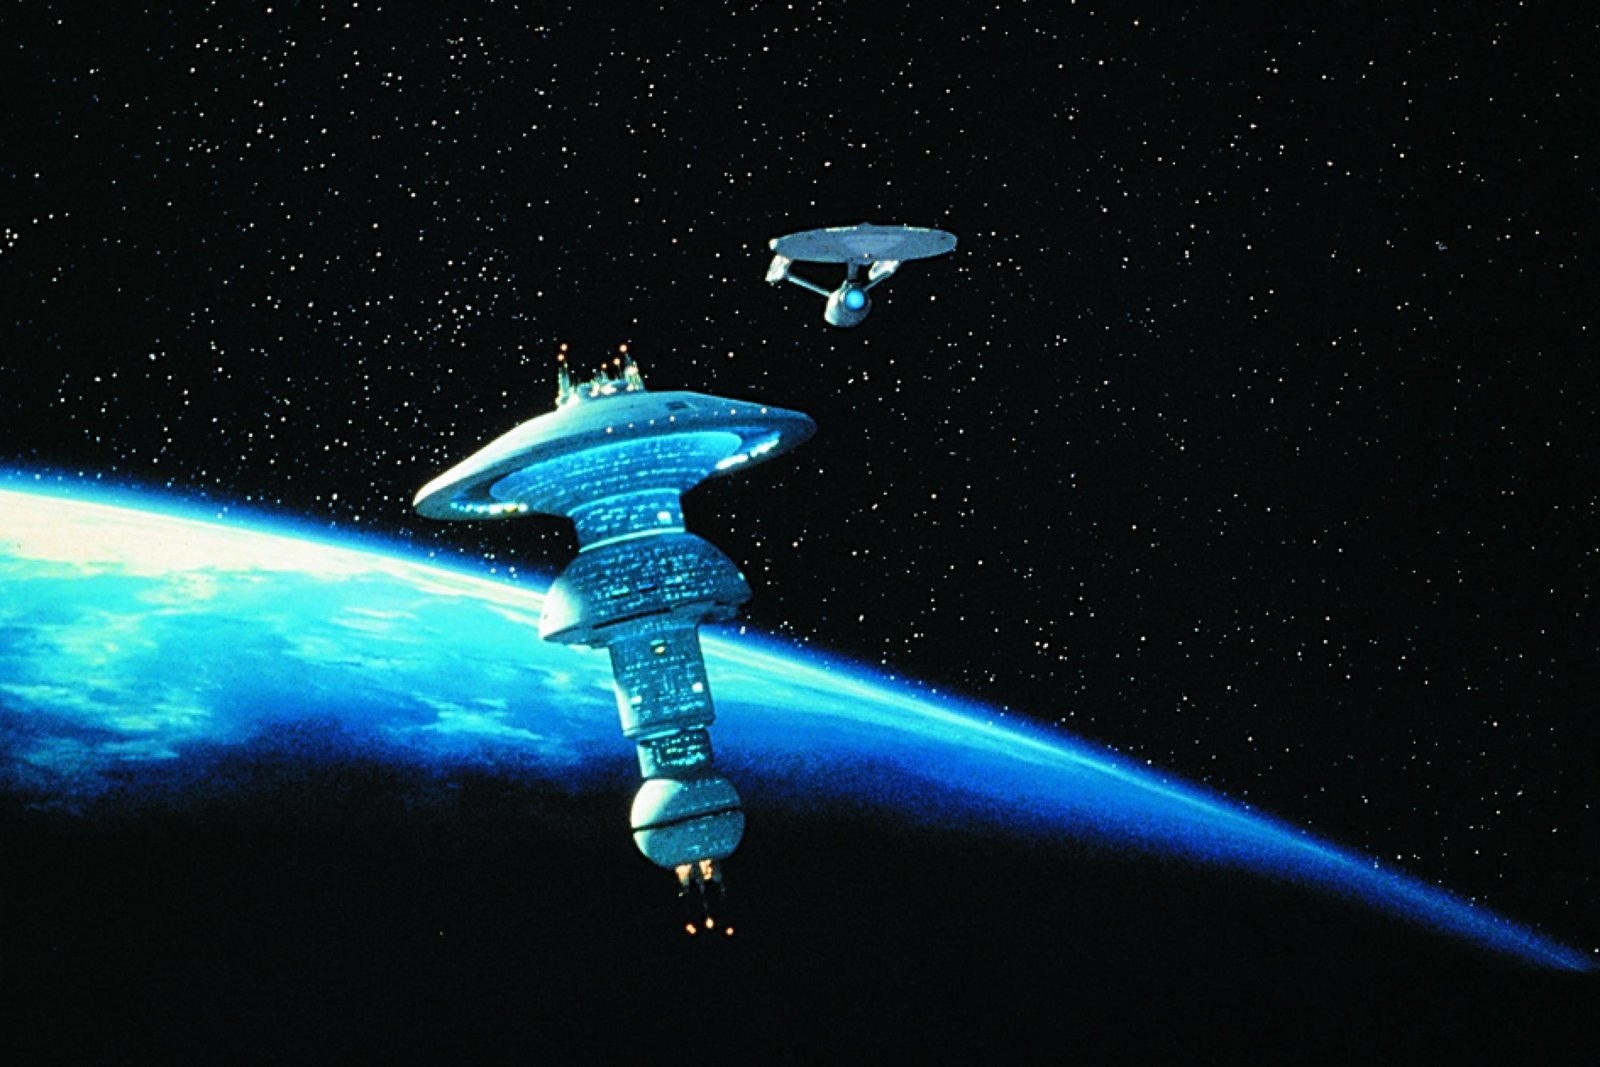 Star Trek 6 - Das unentdeckte Land (4K Ultra HD)